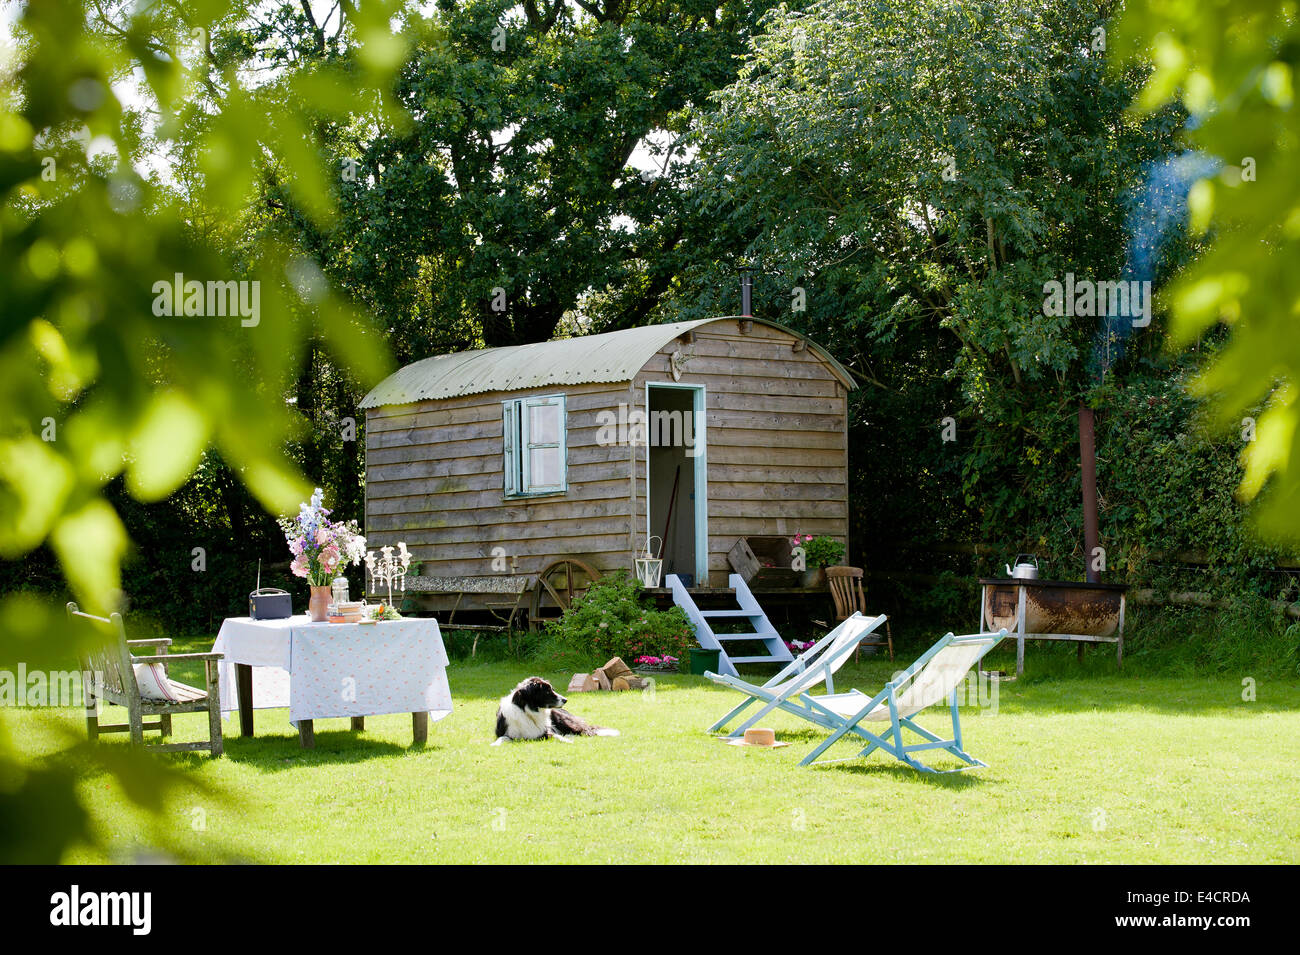 Una casalinga capanna di pastori in un paese di lingua inglese giardino con sedie a sdraio Foto Stock